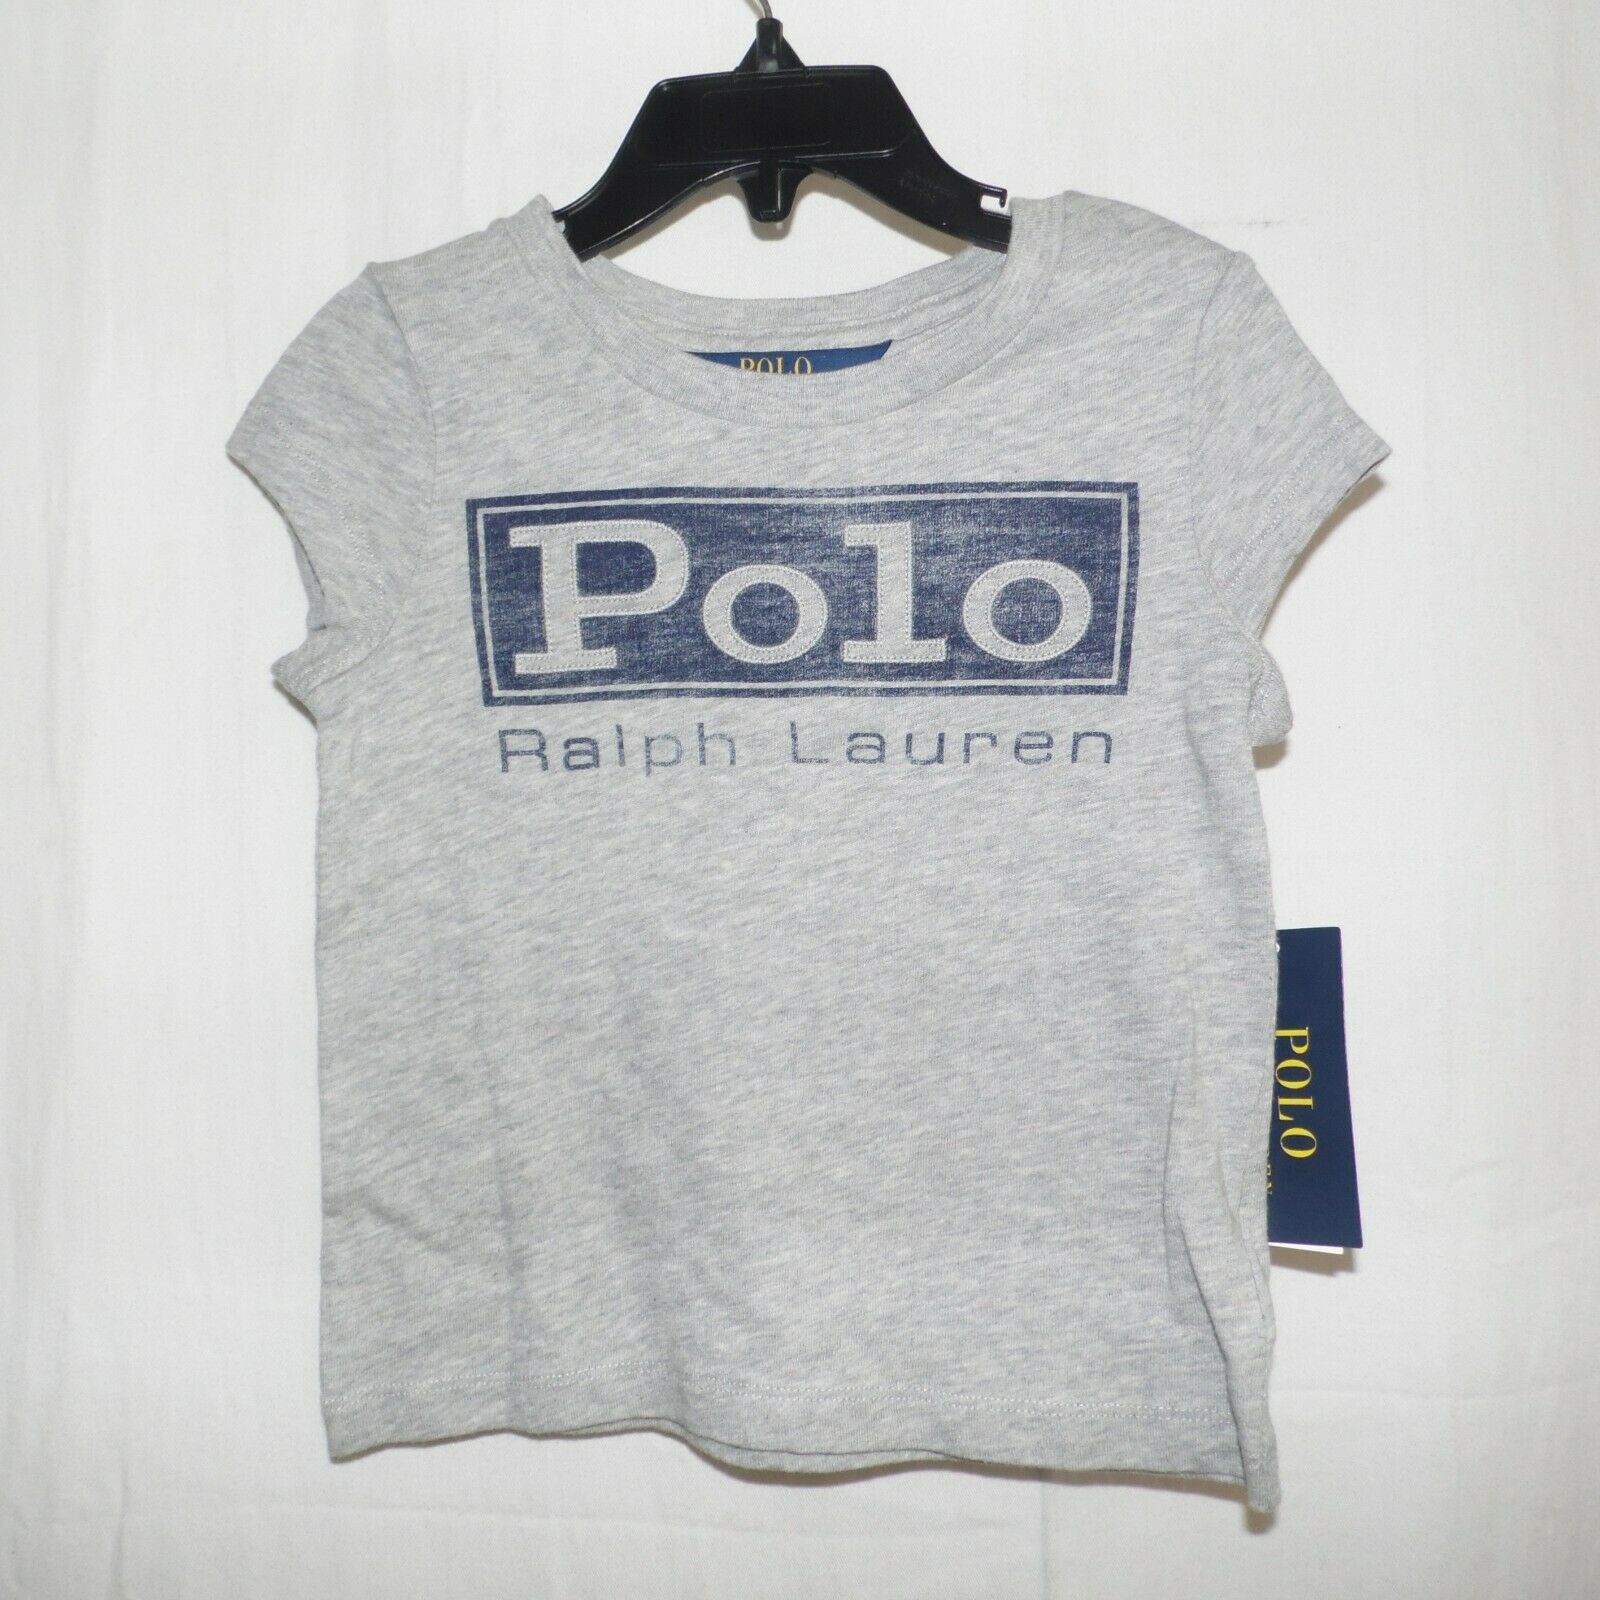 Polo Ralph Lauren Gray T-shirt Girls 3 3T - Tops & T-Shirts